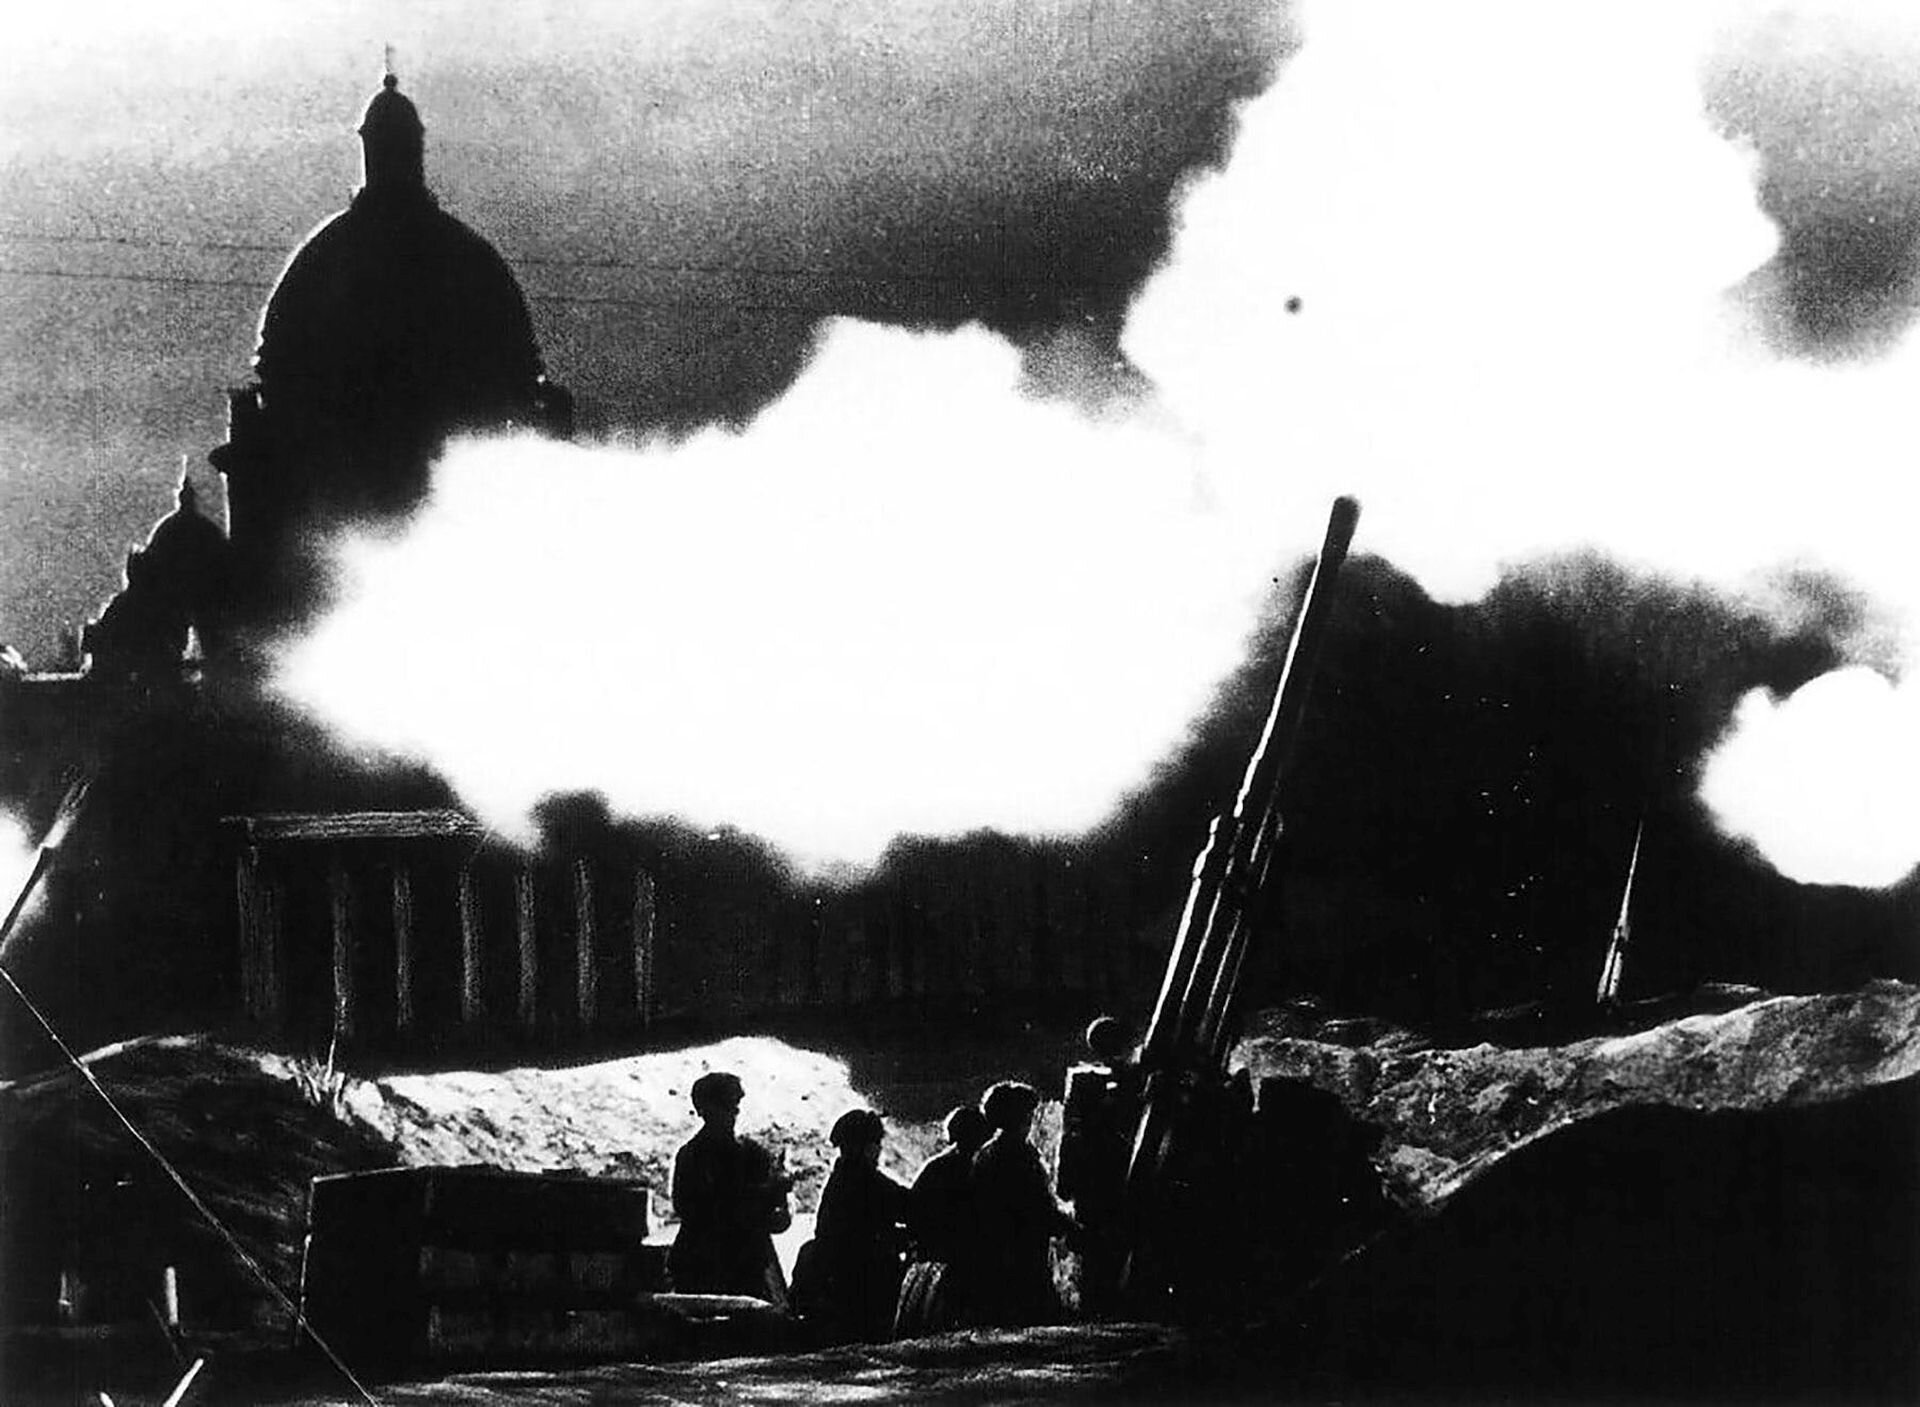 Ilustracja przedstawia ogień dział przeciwlotniczych umieszczonych w okolicy katedry św. Izaaka w Leningradzie w 1941 roku. Grafika powiązana jest z VII symfonią Leningradzką, która powstała w czasie poprzedzającym atak wojsk hitlerowskich i blokadę Leningradu.